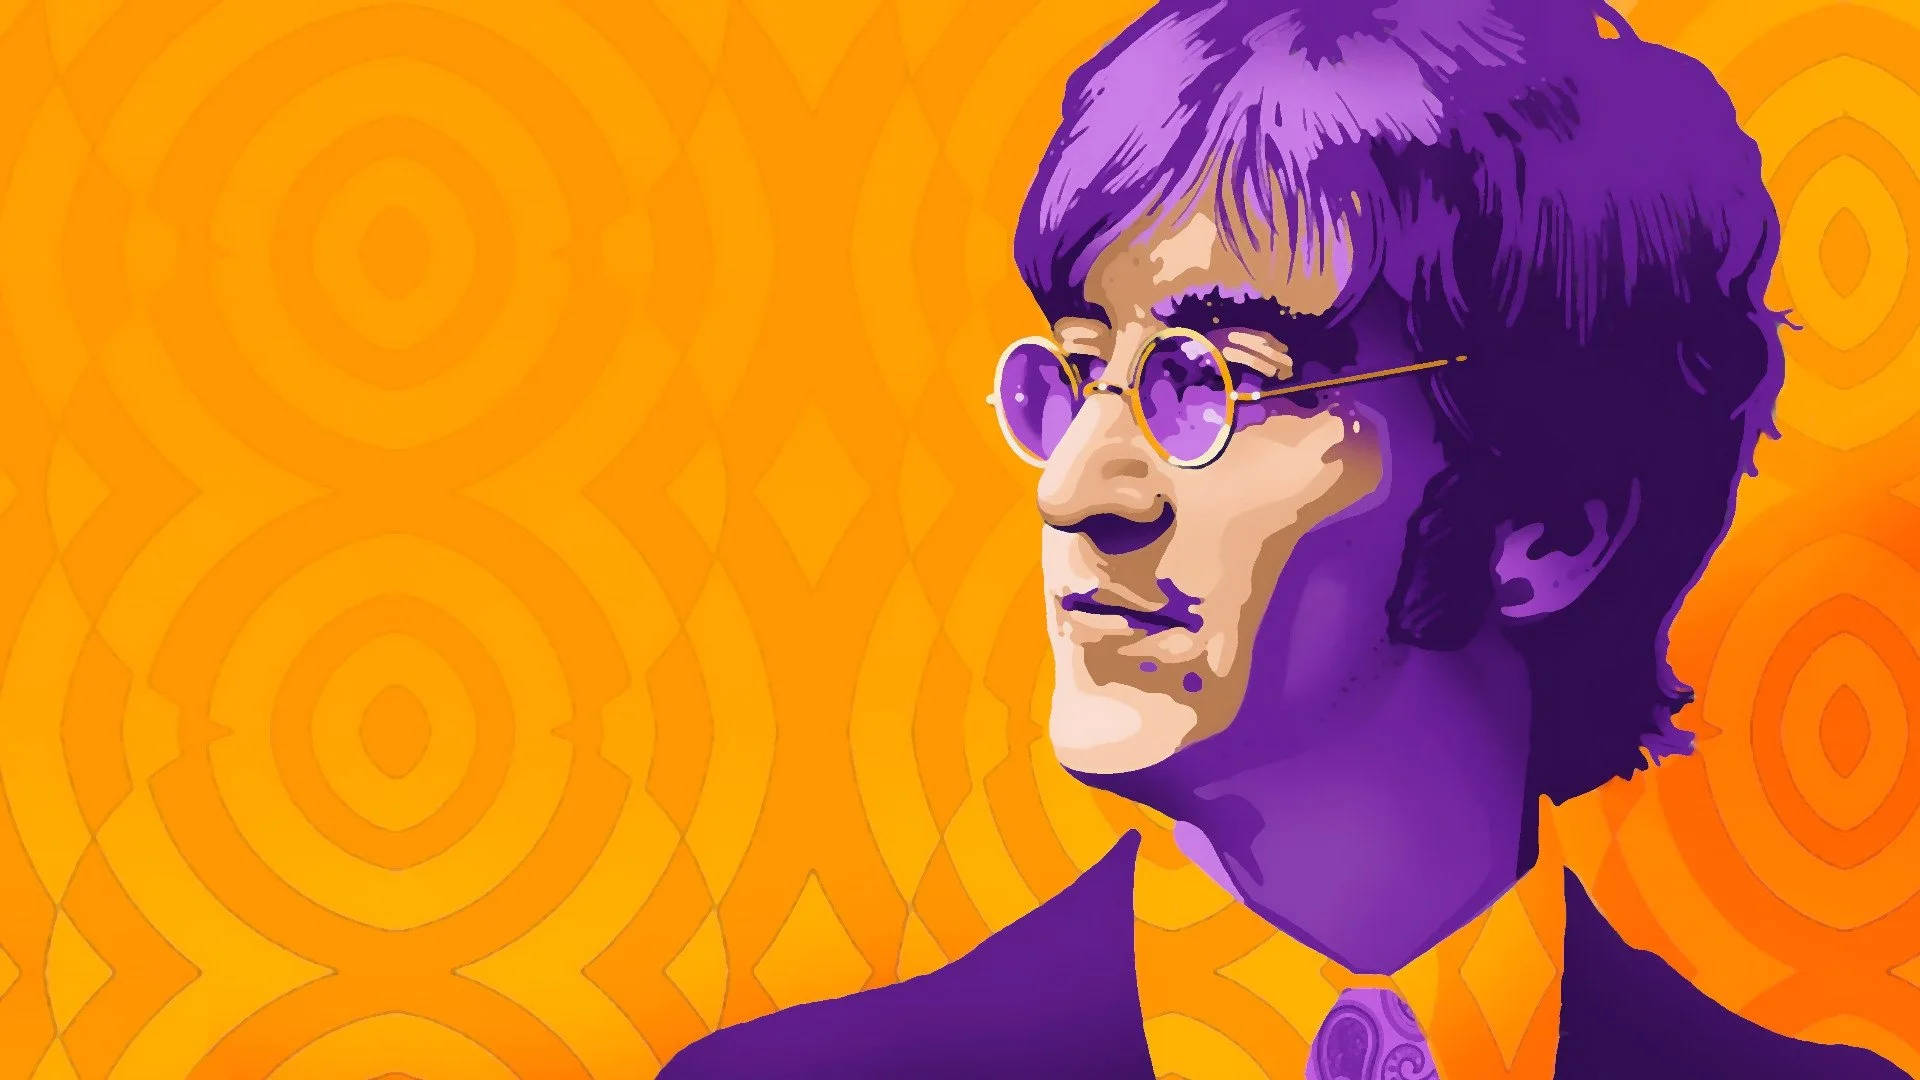 John Lennon Wallpaper Images